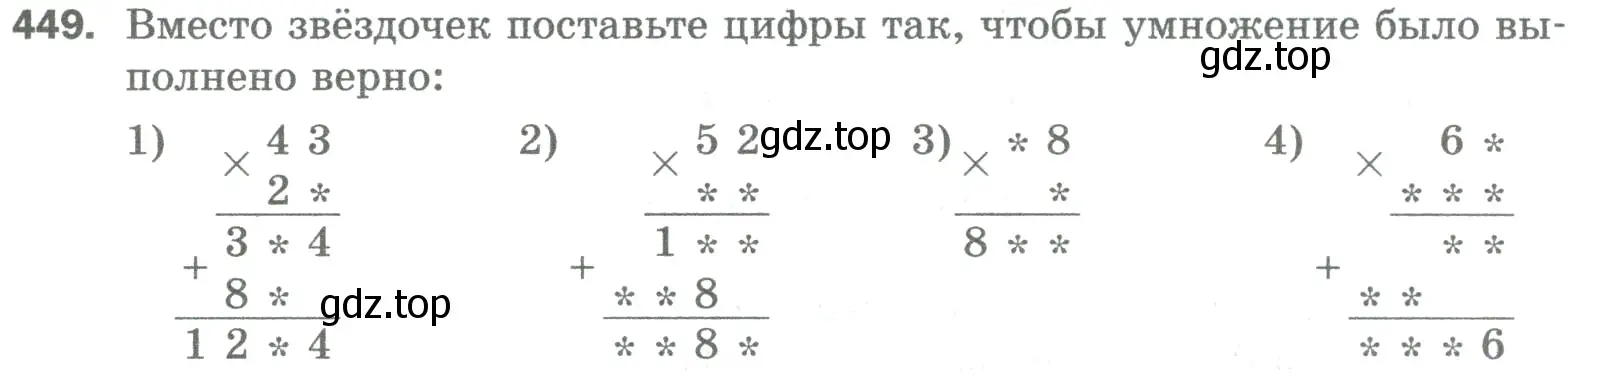 Условие номер 449 (страница 117) гдз по математике 5 класс Мерзляк, Полонский, учебник